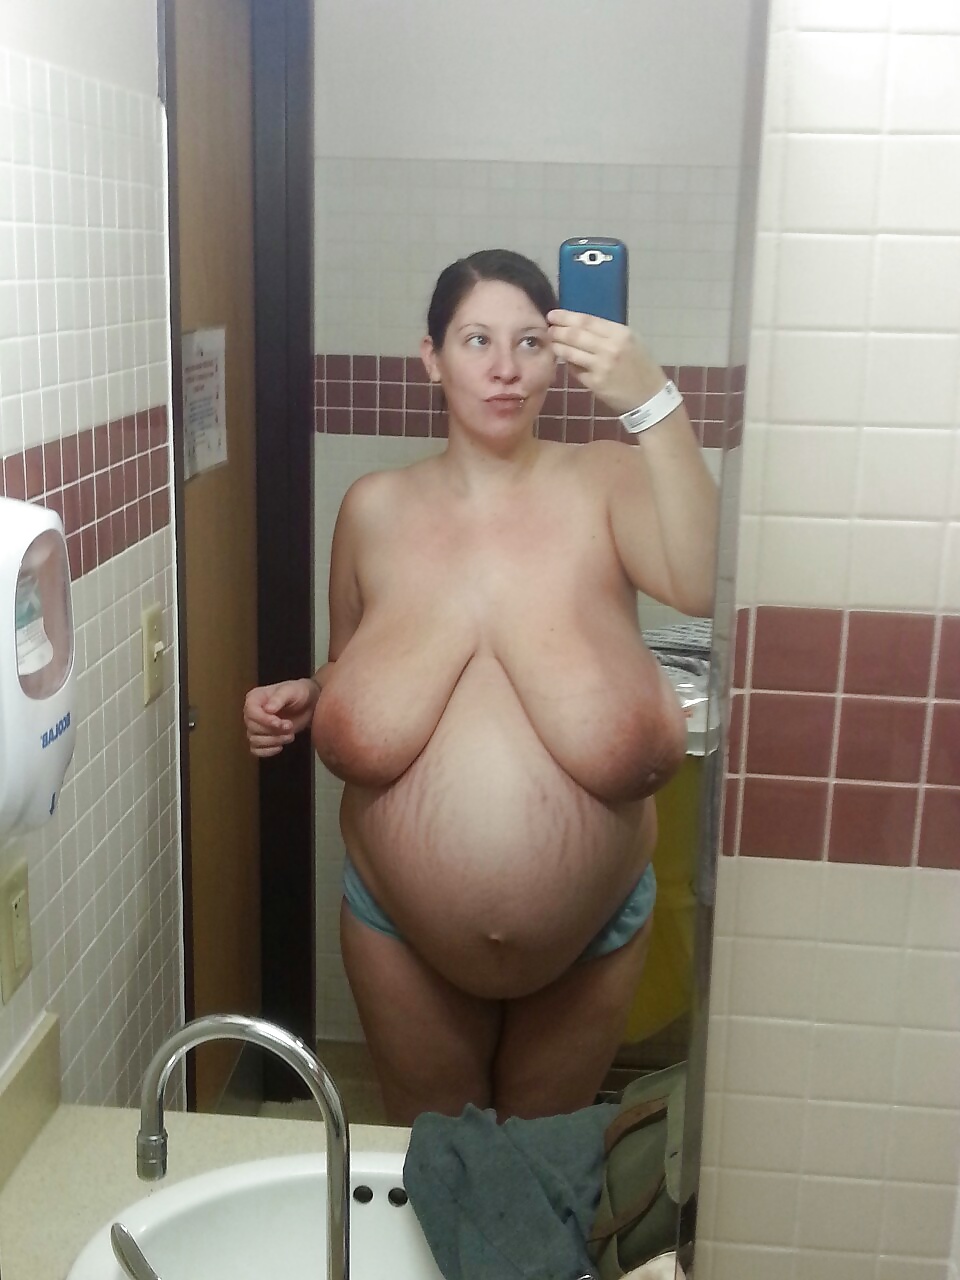 Bbw Pregnant Nude - Big Pregnant - 4 Pics - xHamster.com